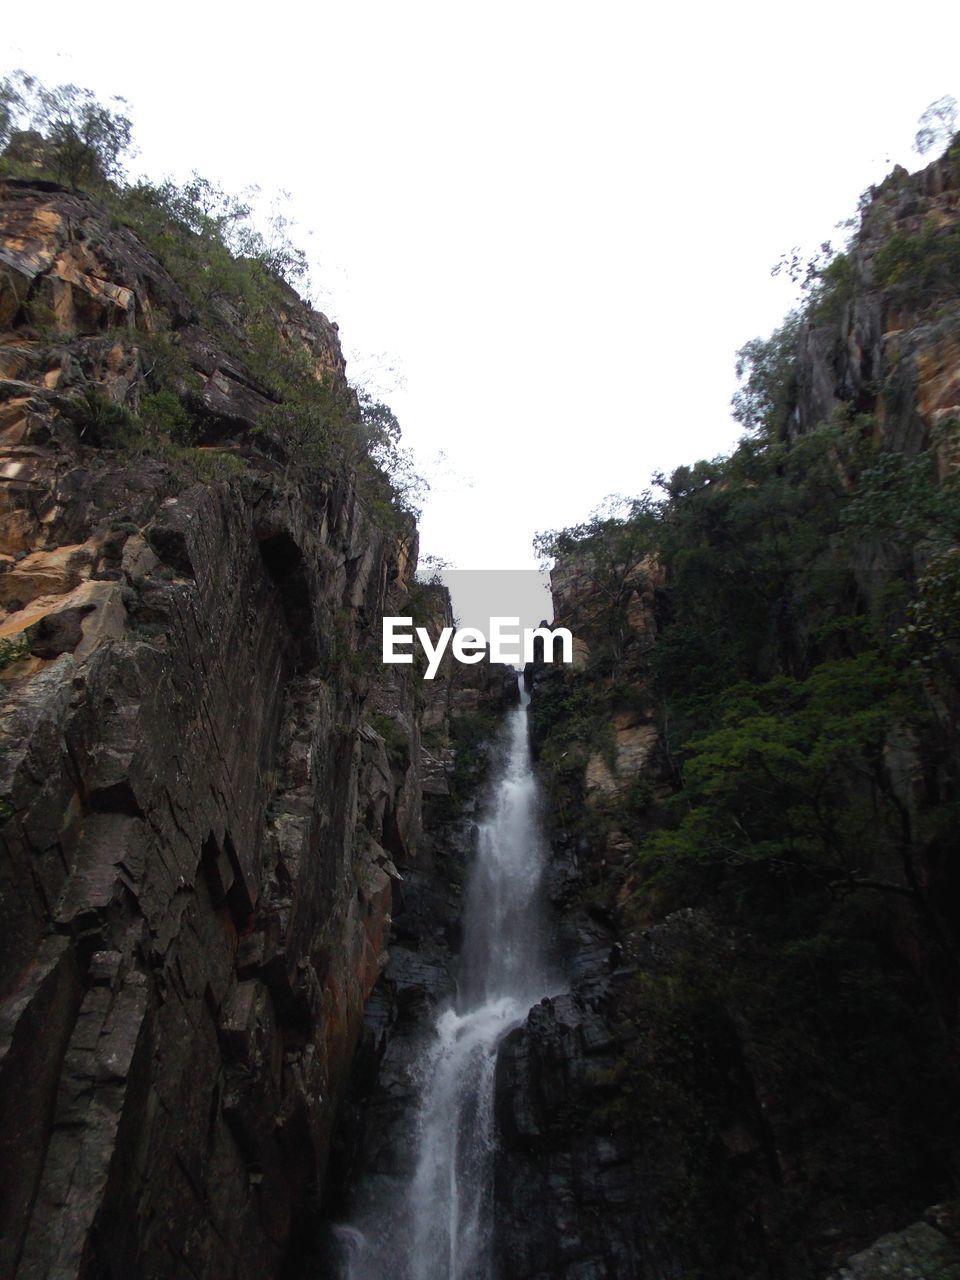 Waterfall between rocks 